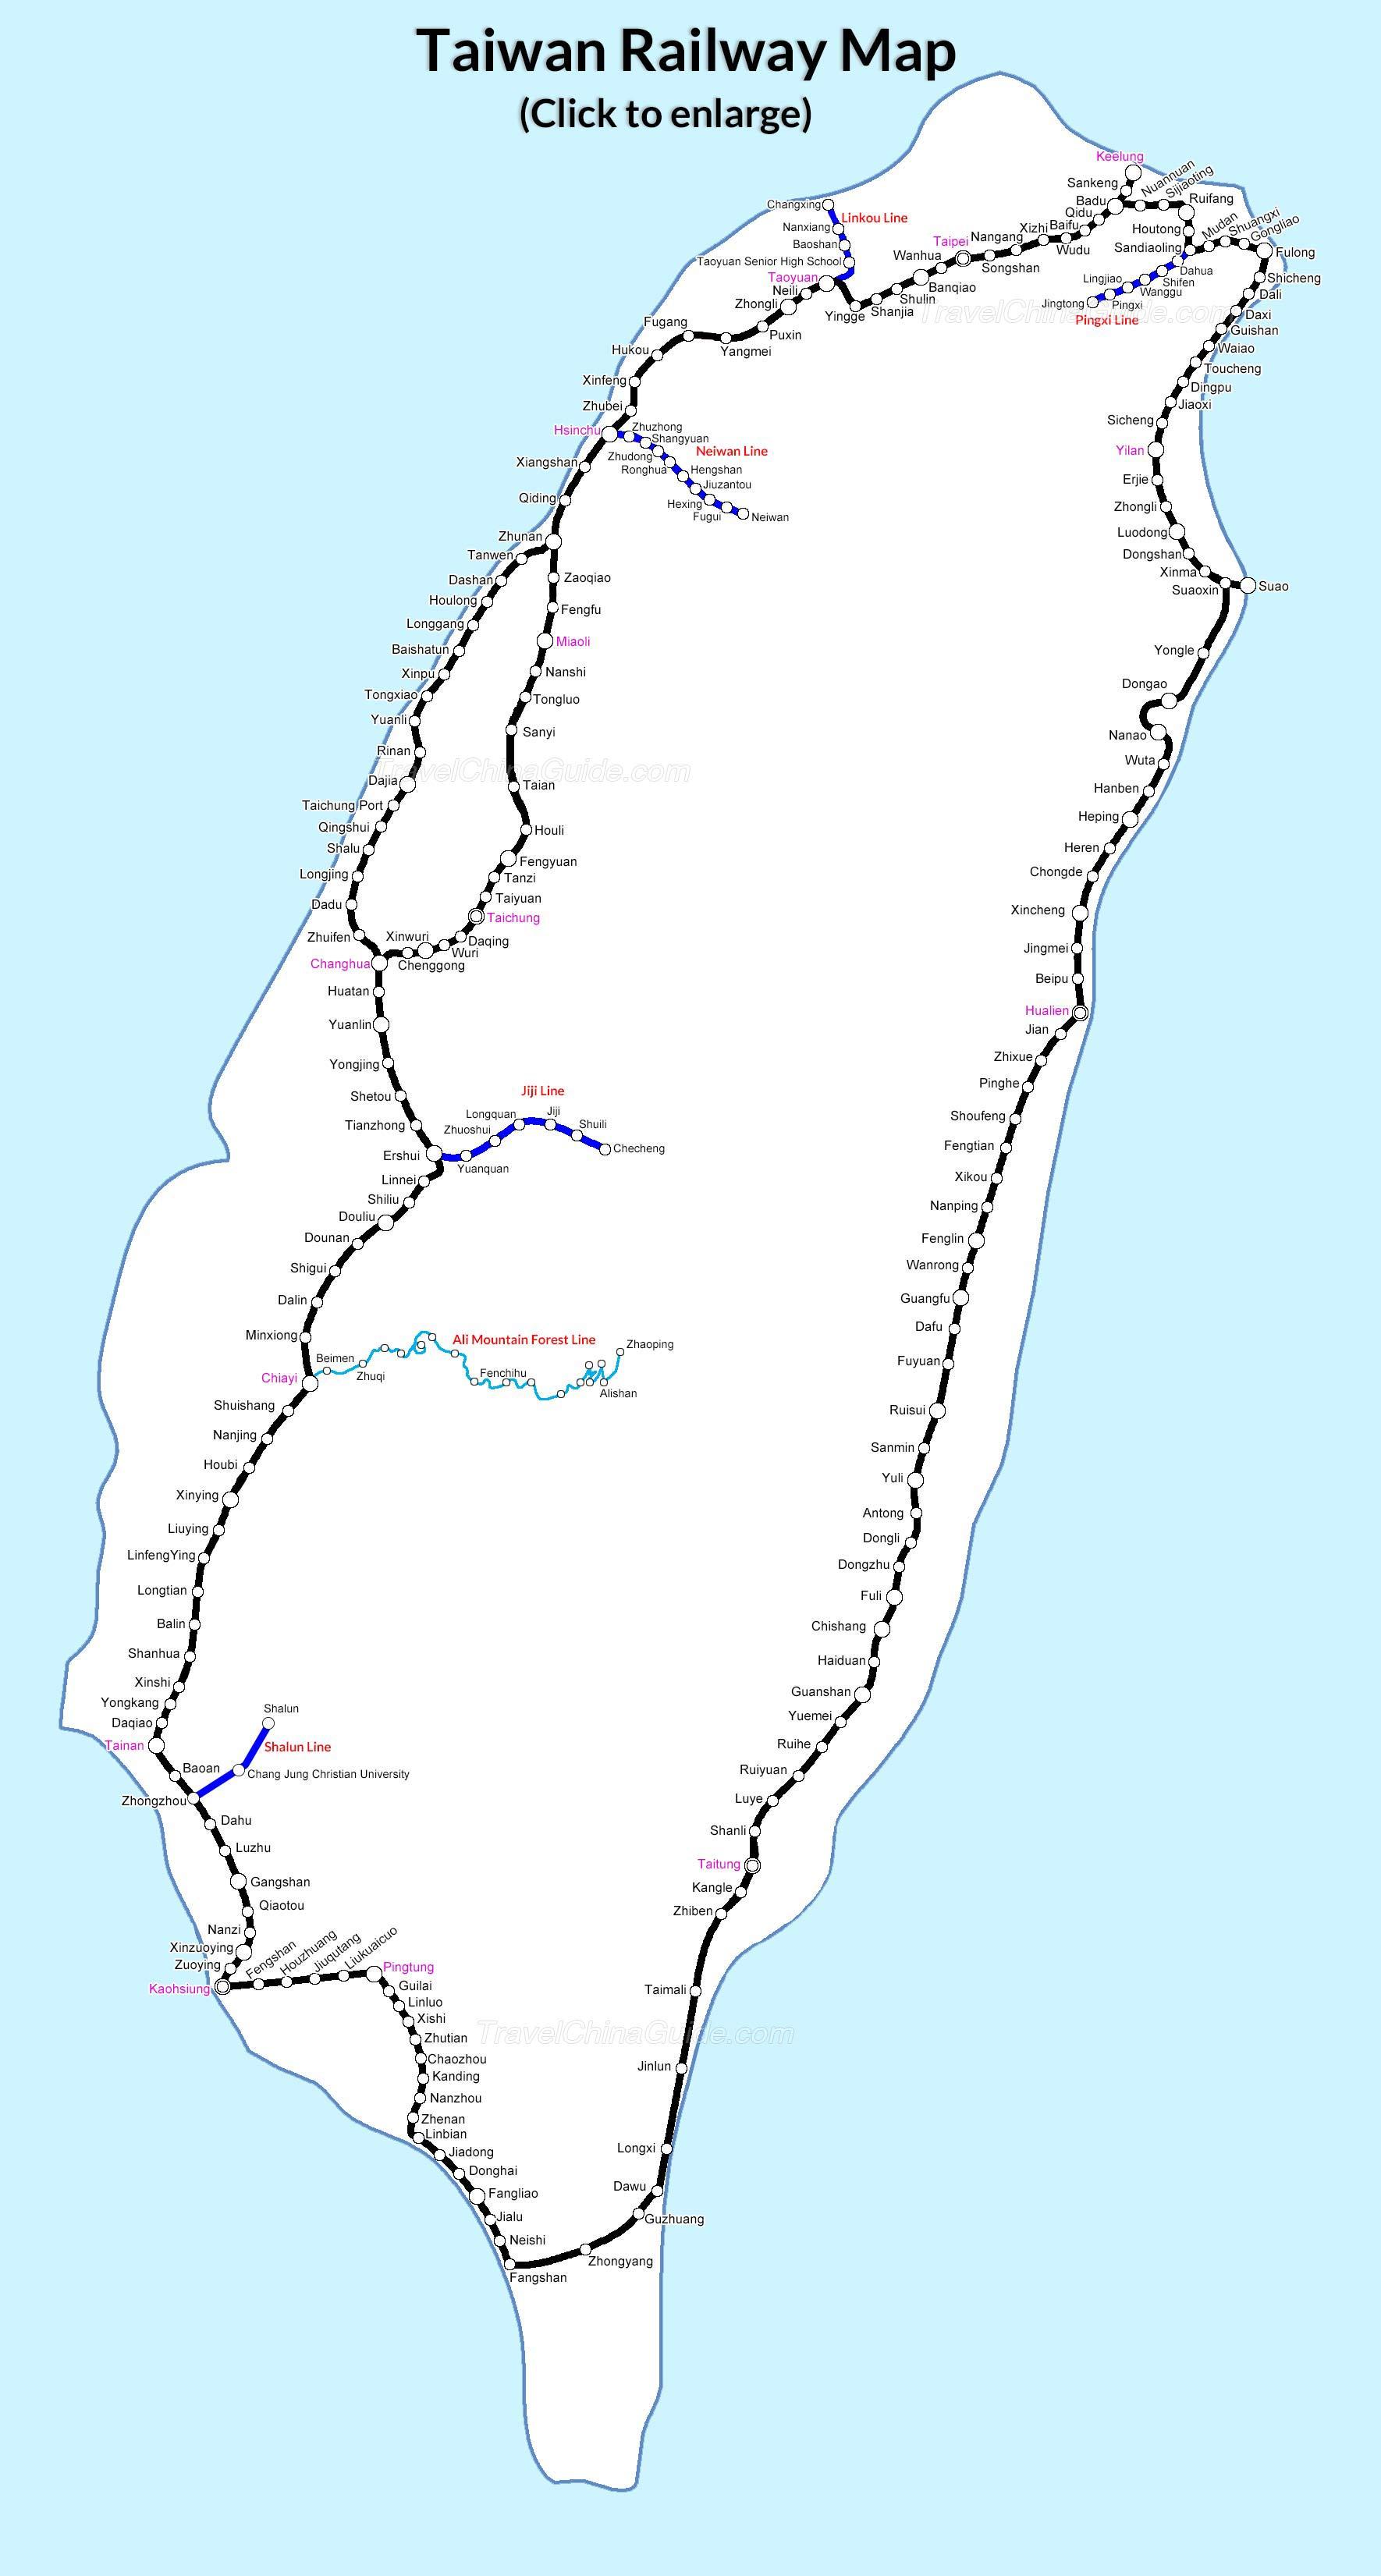 Đường sắt là phương tiện vận chuyển quen thuộc đối với người dân Đài Loan khi đi lại giữa các thành phố. Với bản đồ đường sắt Đài Loan ga xe lửa bản đồ (Đông nam Á) bản đồ tàu điện ngầm Đài Loan, bạn sẽ dễ dàng và tiện lợi hơn trong việc di chuyển và khám phá các địa điểm mới.